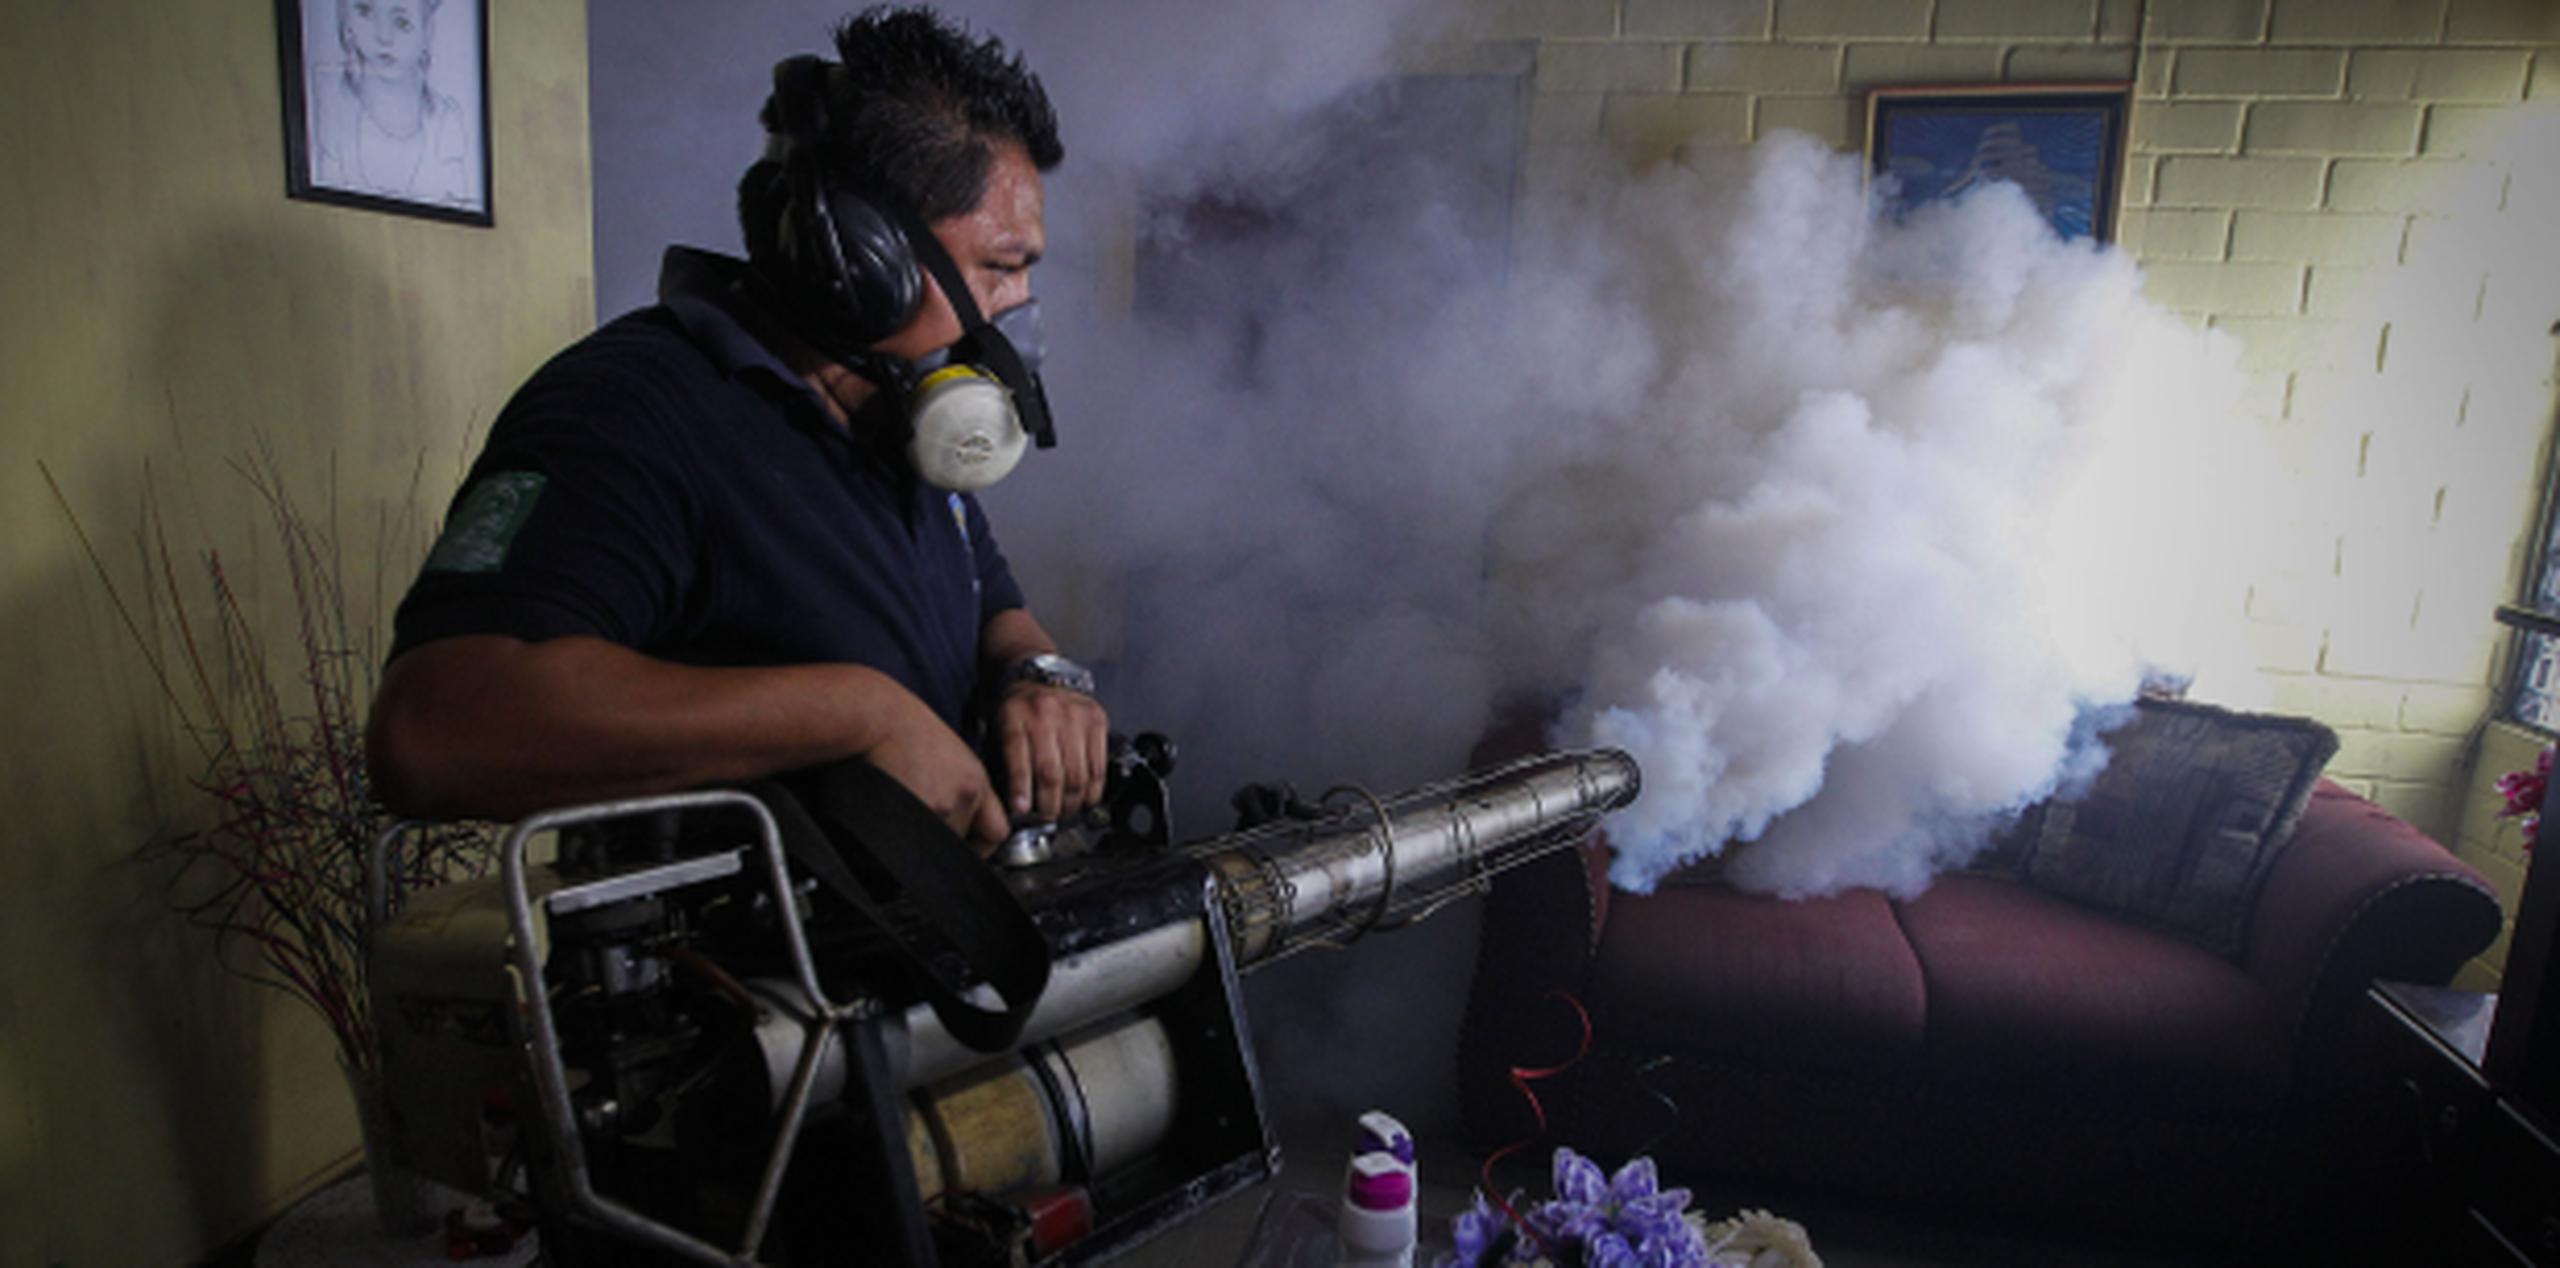 El virus se ha propagado por América Latina. Aquí un fumigador asperja una residencia en San Salvador. (EFE)